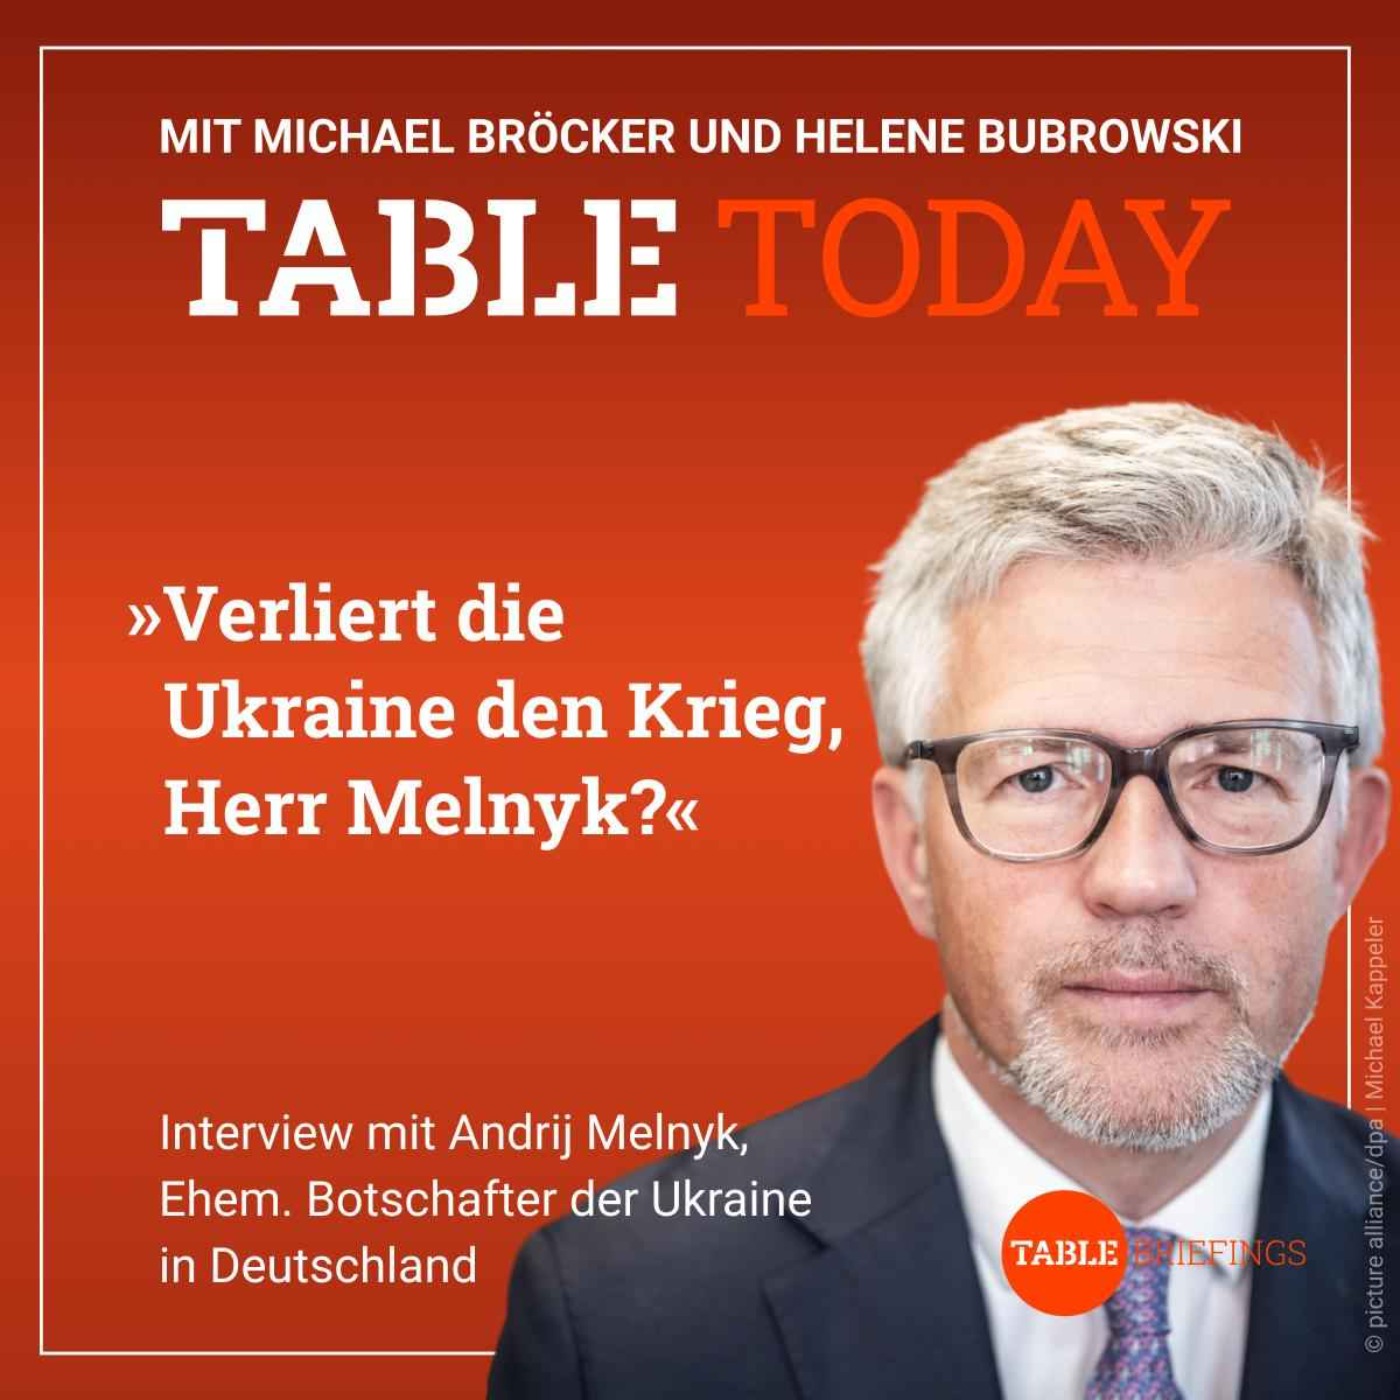 Verliert die Ukraine den Krieg, Herr Melnyk?